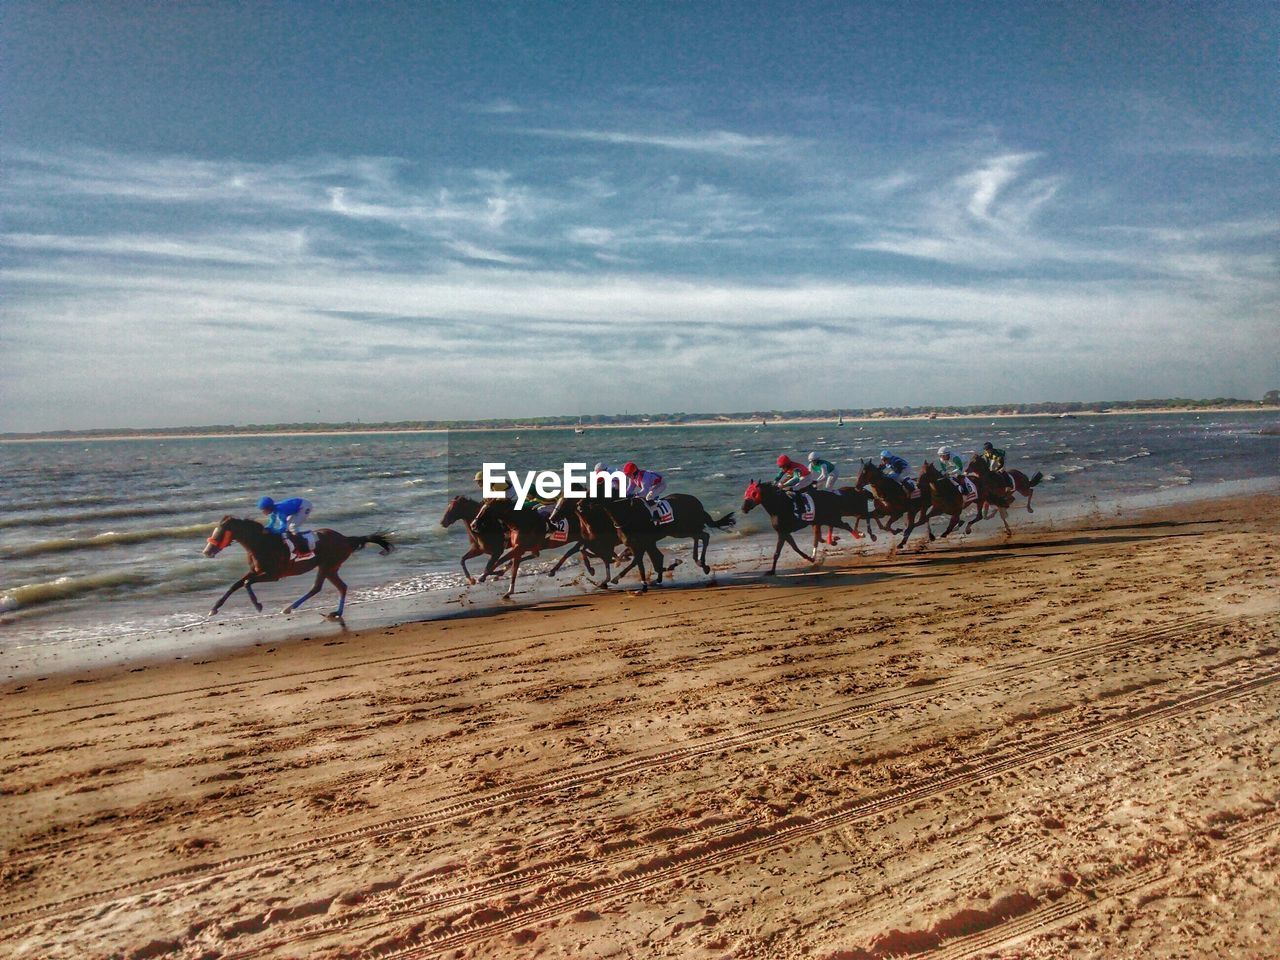 Horse racing on beach against cloudy sky